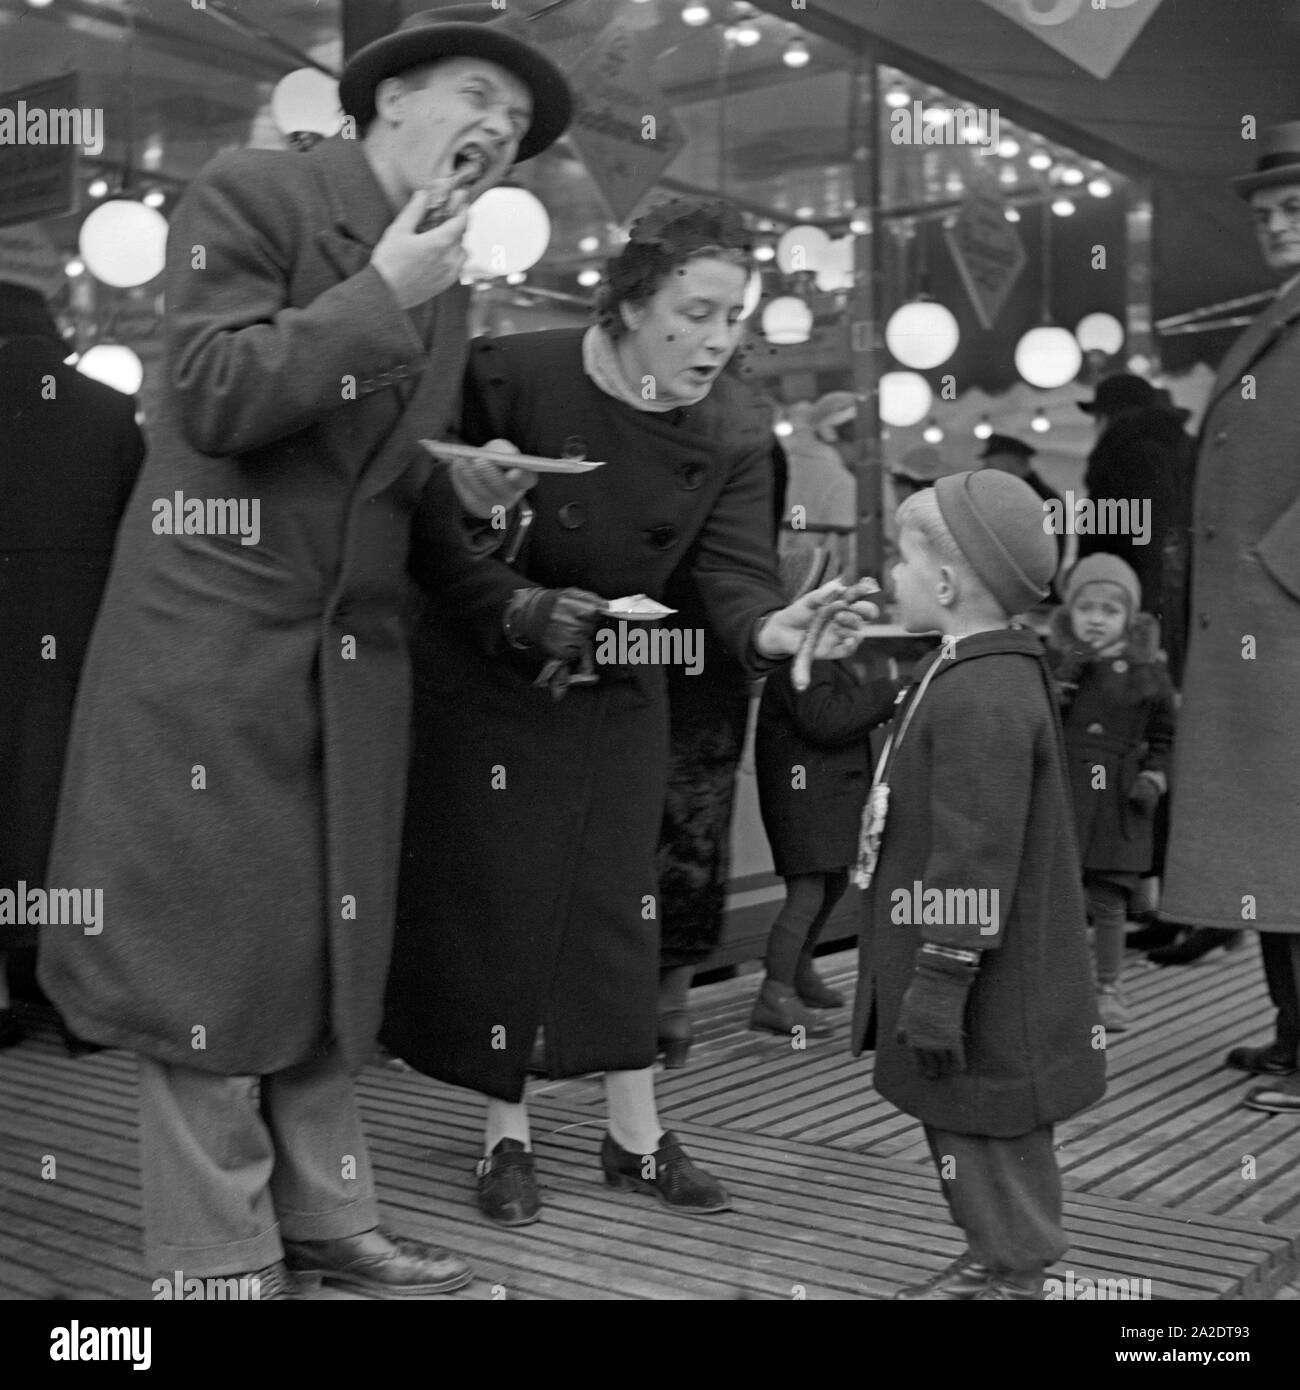 Die Eltern mit ihrem kleinen Jungen vor der Wurstbraterei Würstchen Essen und auf dem Weihnachtsmarkt Deutschland, 1930er Jahre. Les parents et leur petit garçon en face d'un snack-bar stand lors du marché de noël de manger des saucisses, Allemagne 1930. Banque D'Images